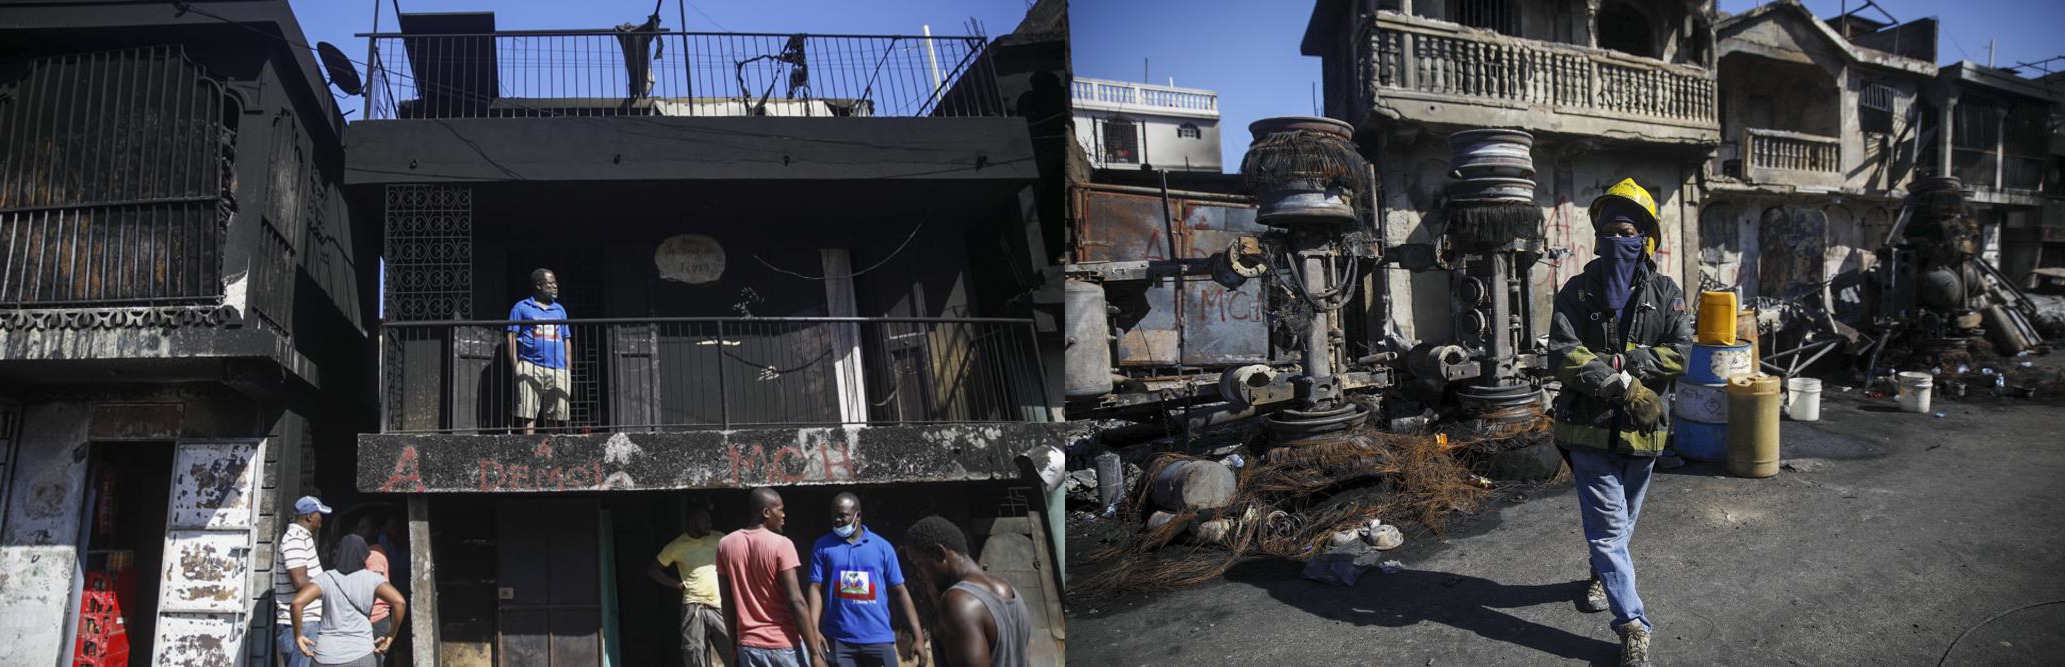 Fireball From Overturned Tanker Kills Dozens In Haiti